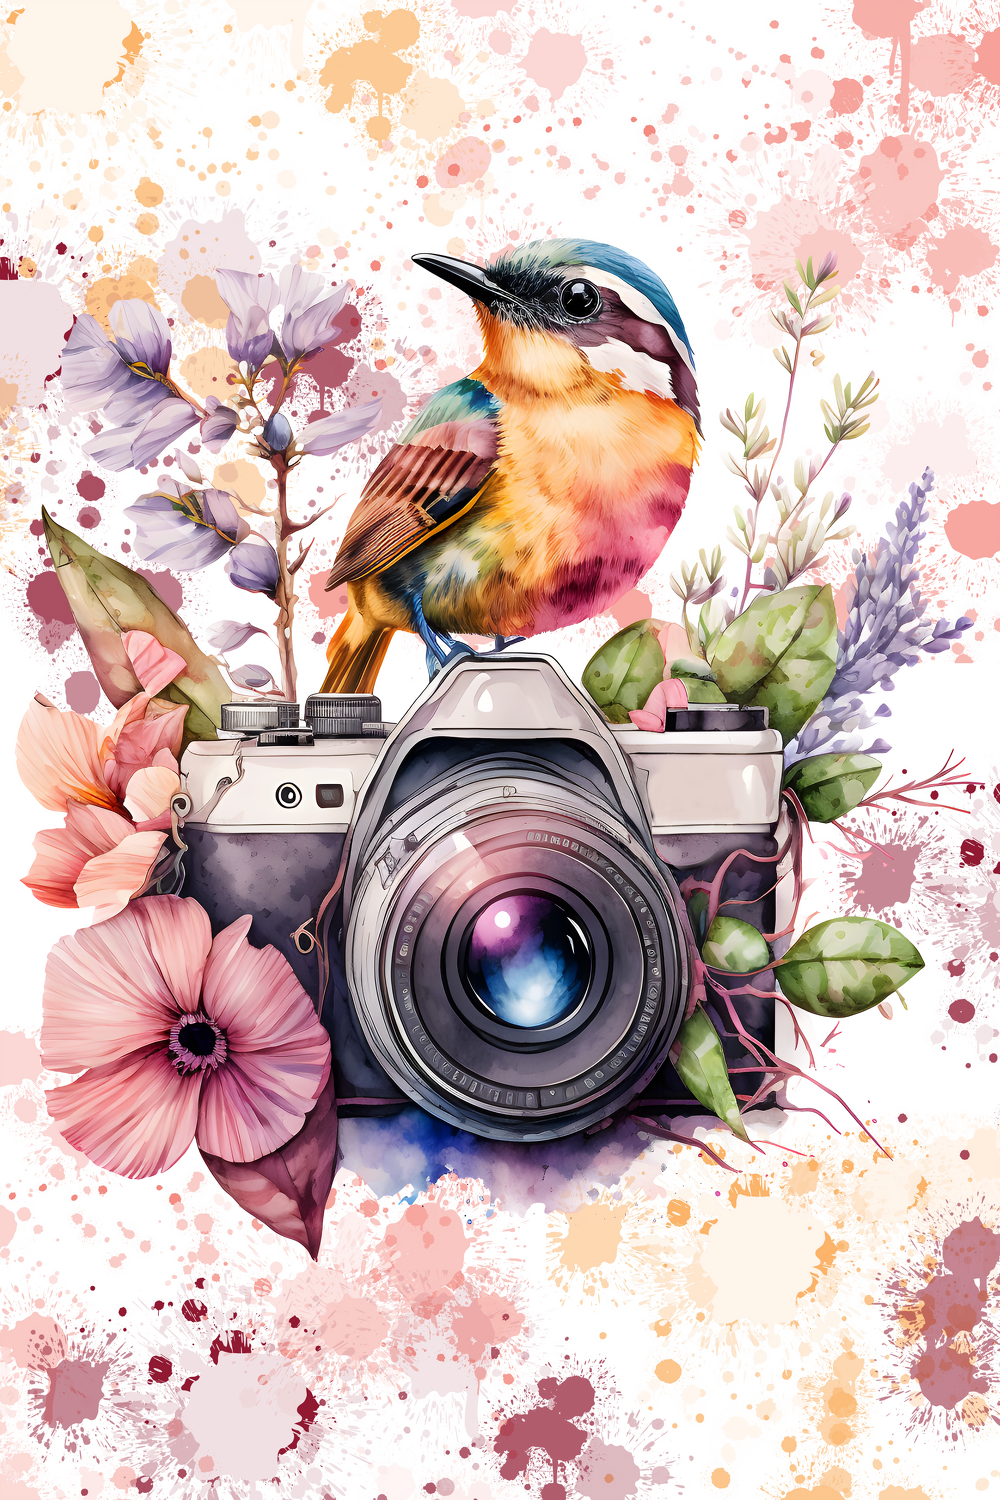 Bild mit Blumen, Glockenblumen, Vögel, Kunstfotografie, Fotografien Blumen und Pflanzen